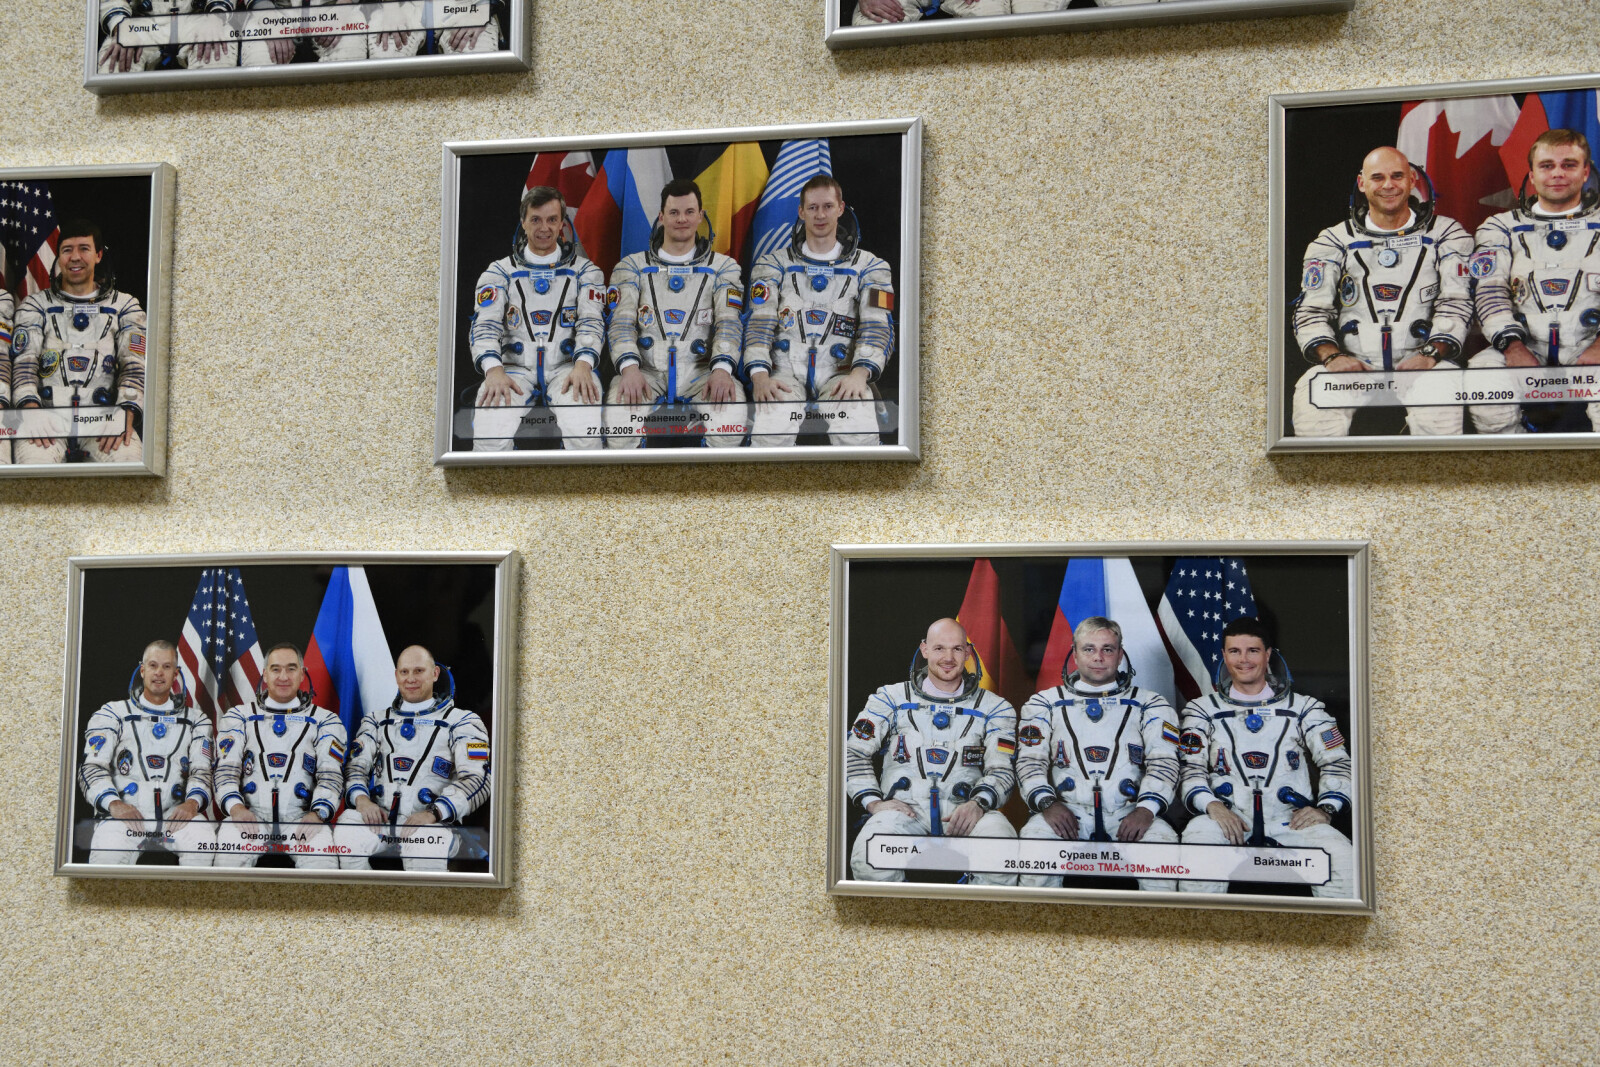 <b>SKRYTEVEGG:</b> 300 romfarere har gått igjennom sin grunntrening og forberedelser i Stjernebyen, herunder 121 russiske kosmonauter. Alle pryder veggen.